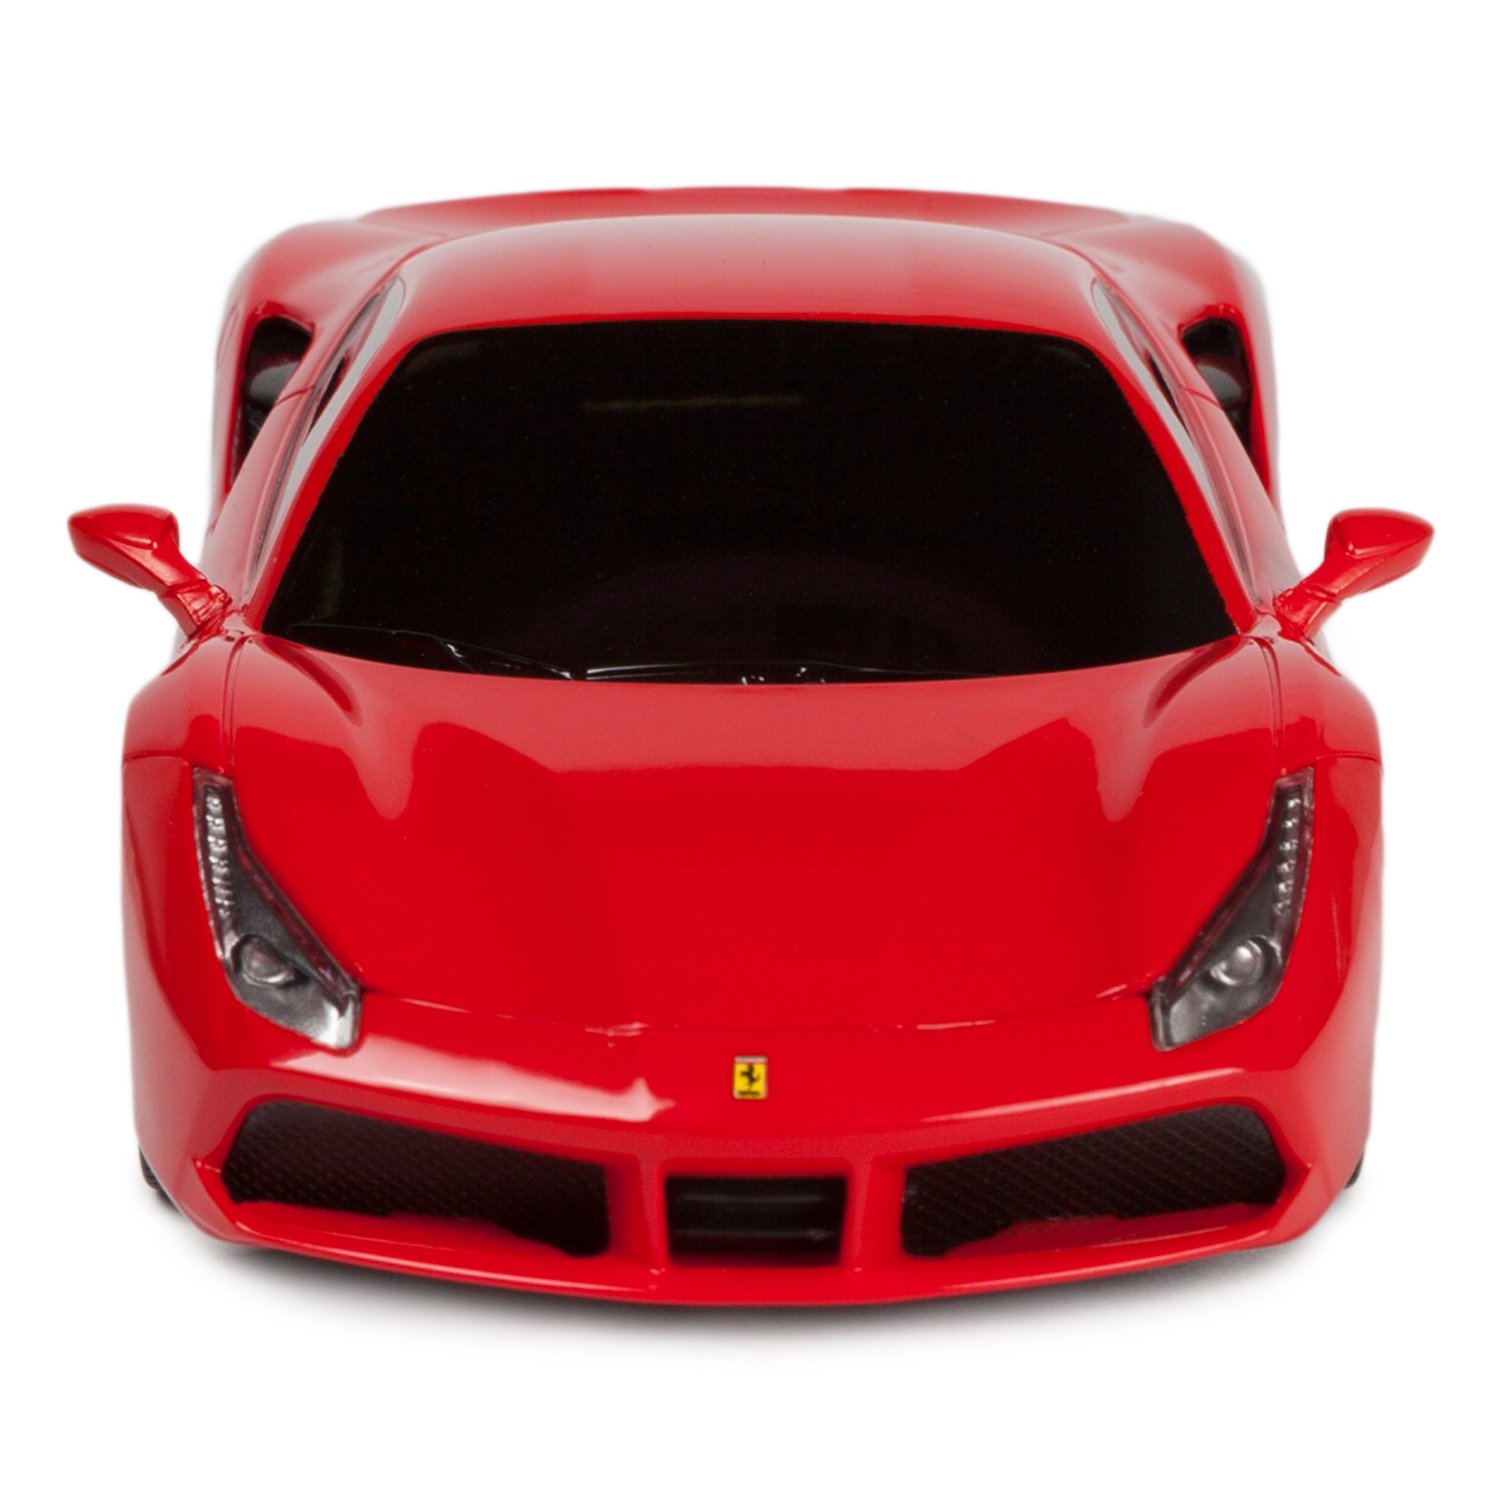 Машинка на радиоуправлении 1:24 Rastar «Ferrari GTB 488» 76000, Красный